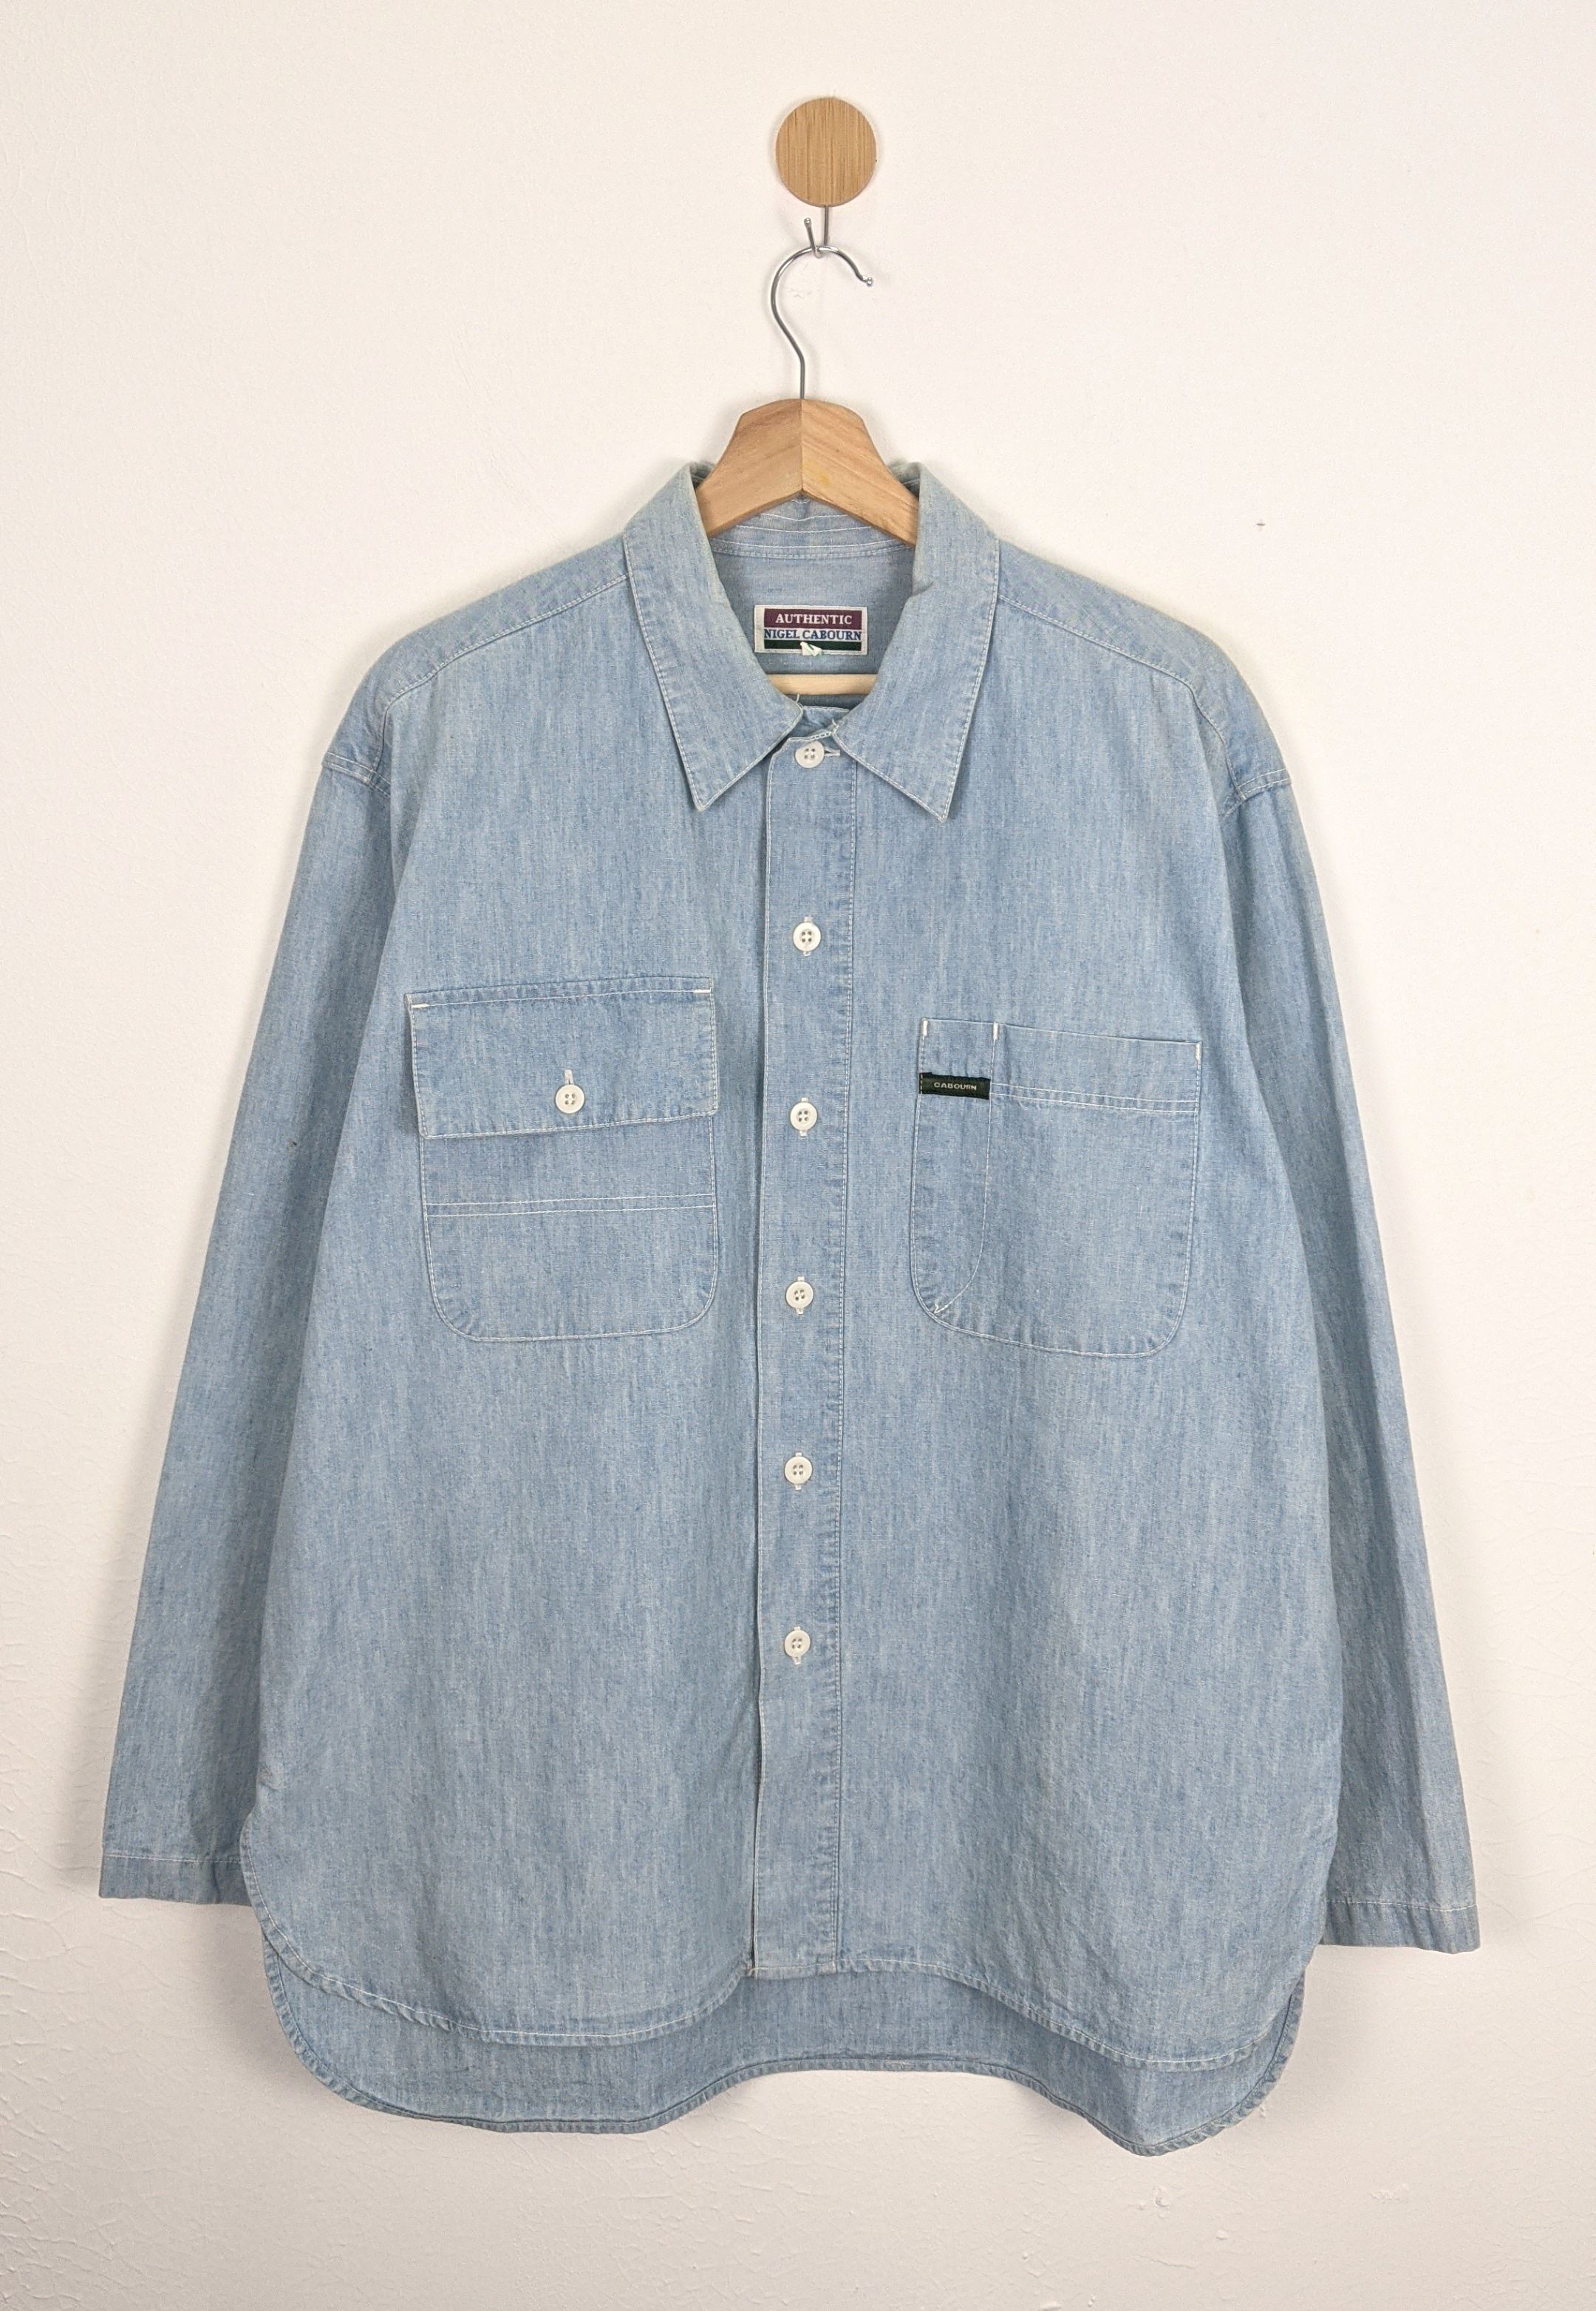 Nigel Cabourn Jeans denime button front designer shirt - 1